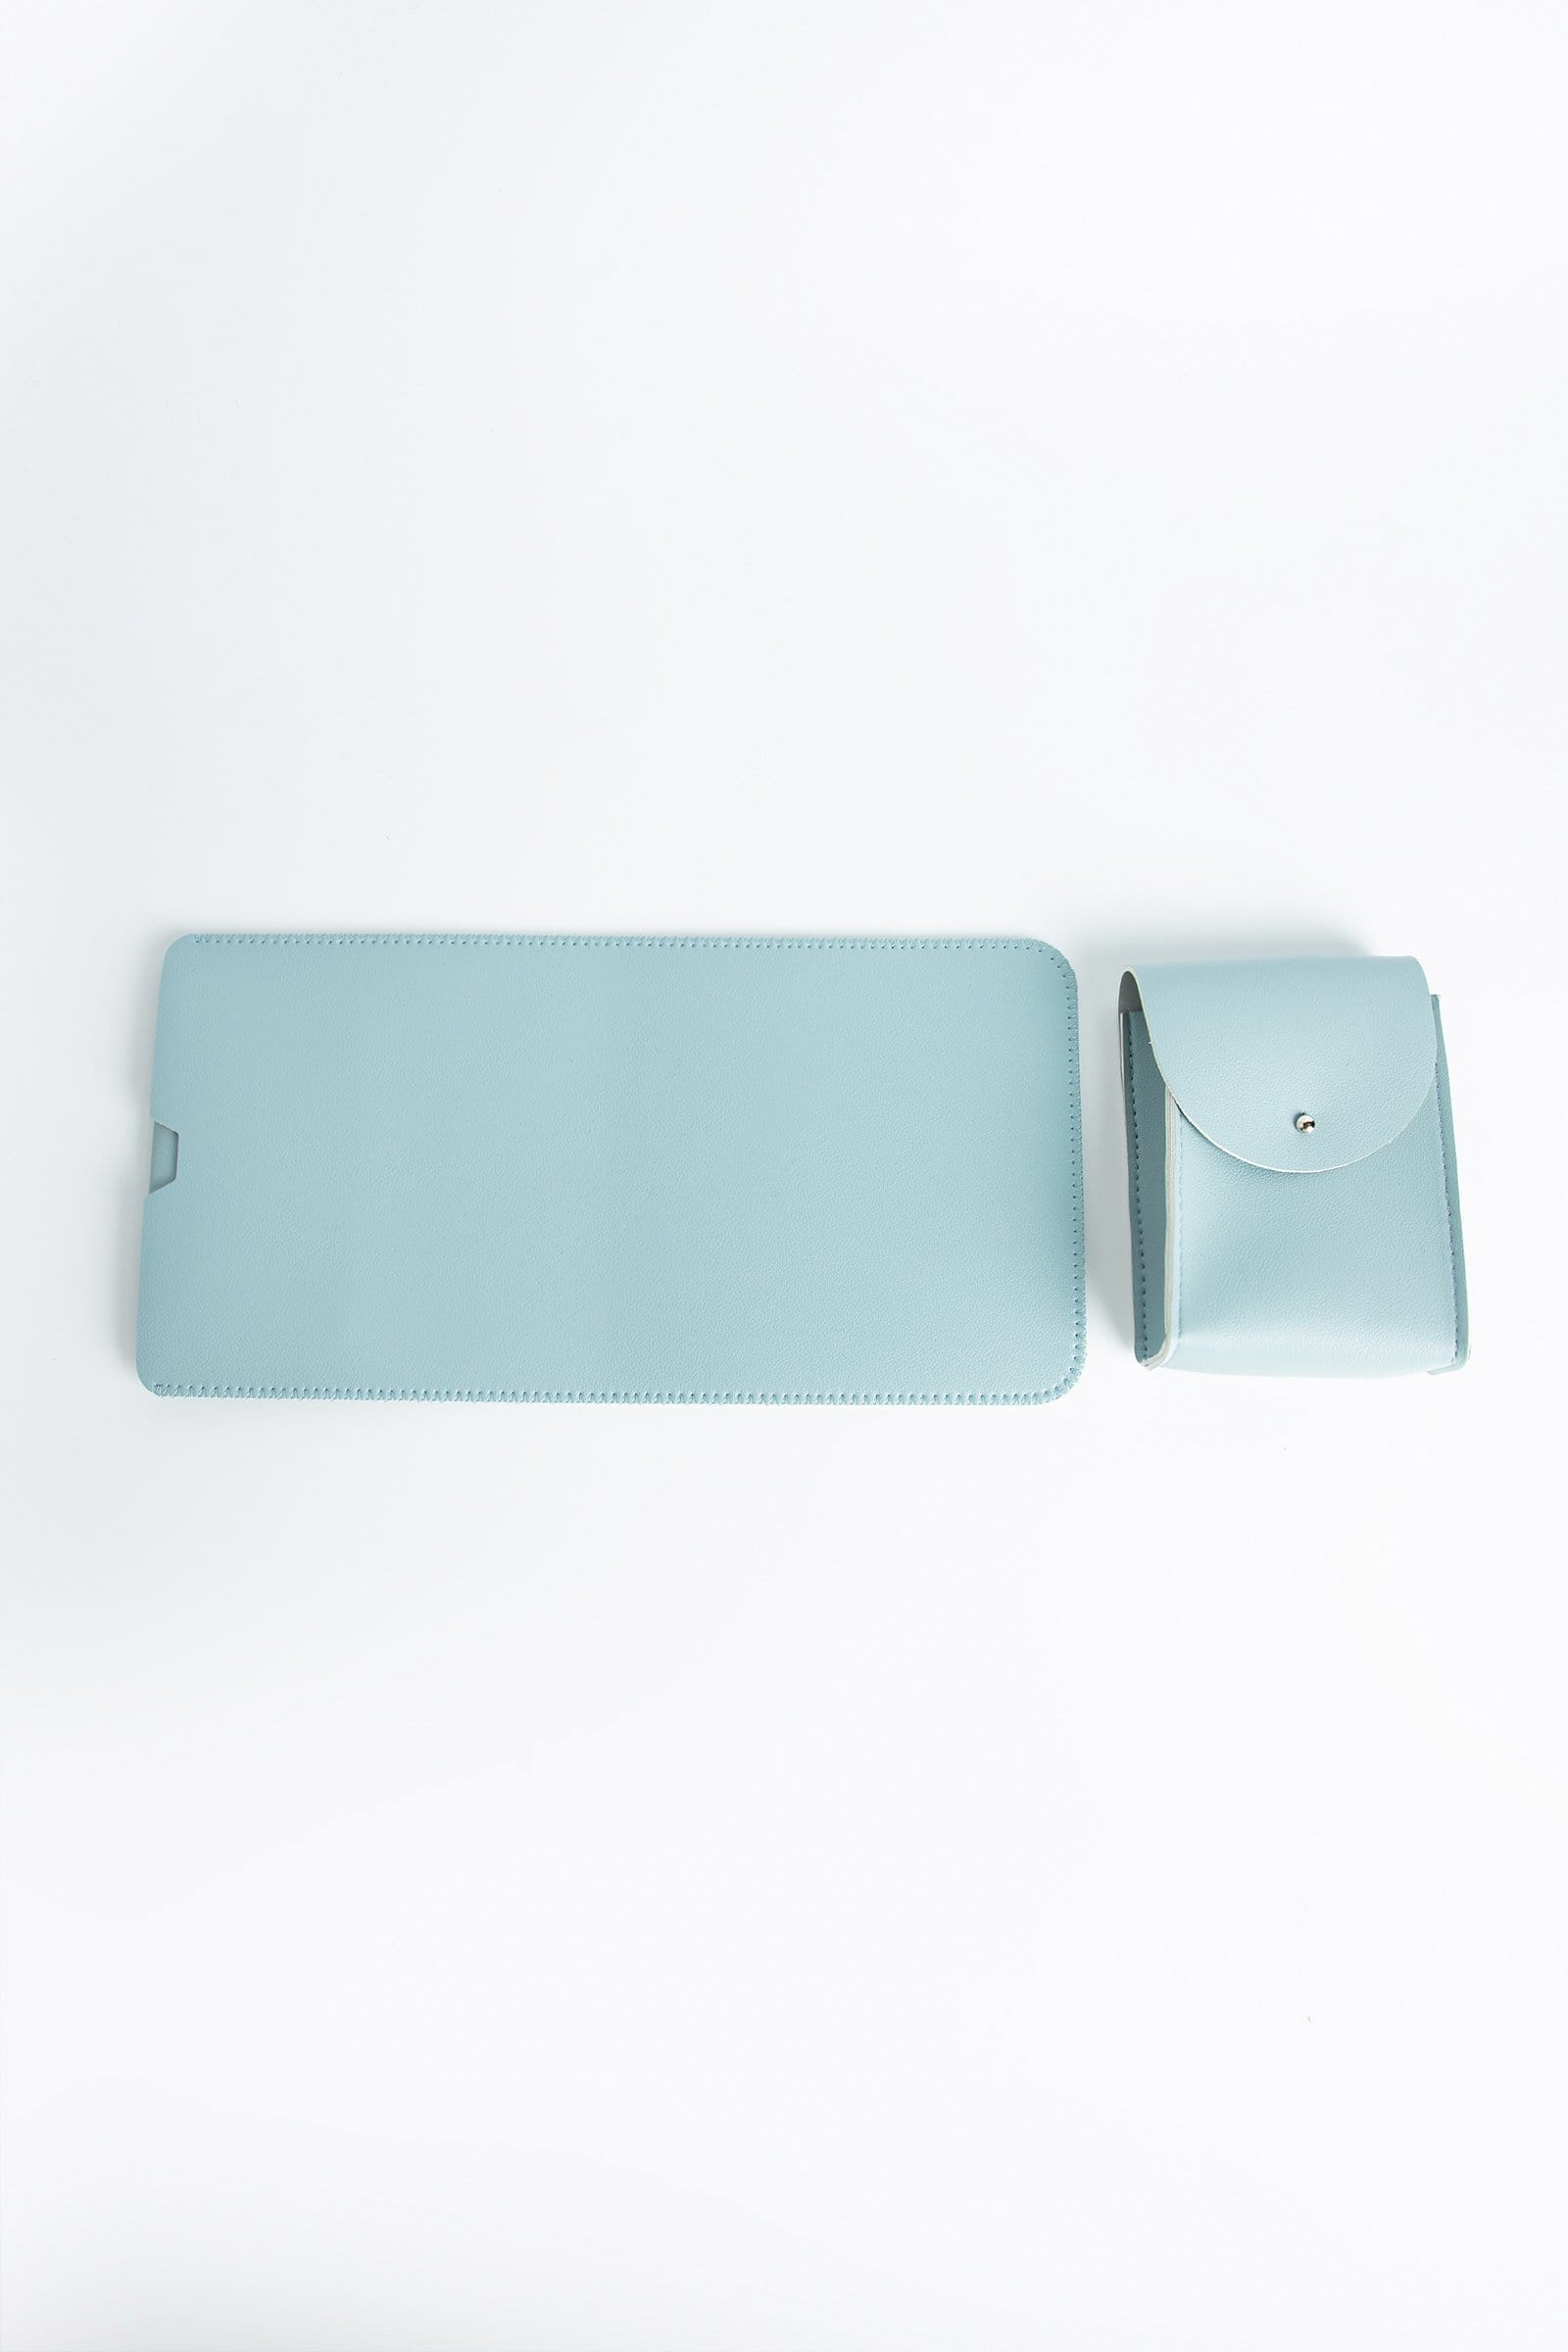 

J.ING Allida Sky Blue Keyboard Mouse Portable Bag Set